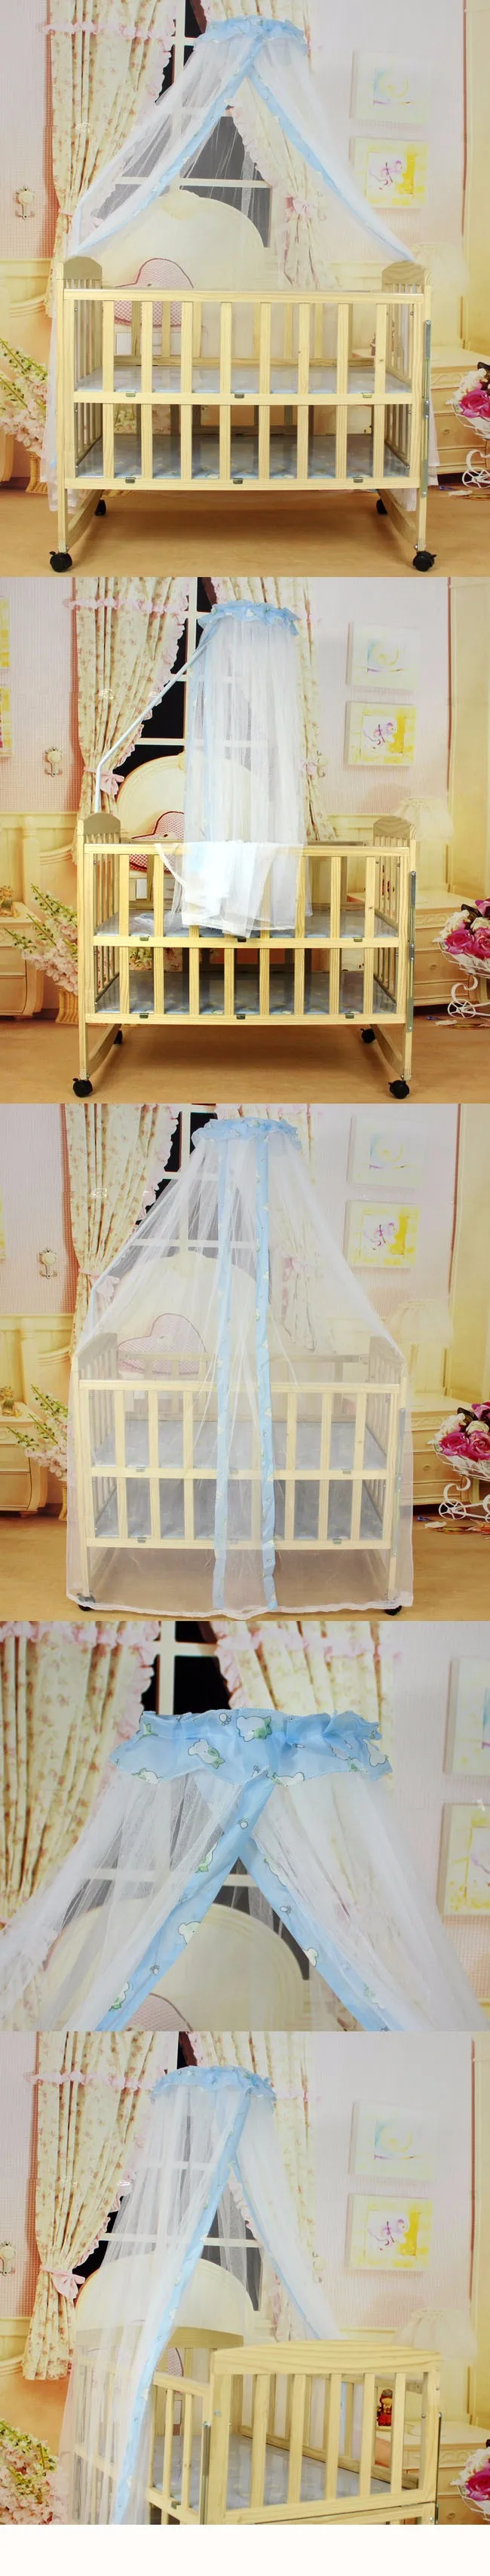 Kidadndy Новая летняя детская противомоскитная для кровати сетка купольная штора-сетка высокого качества детская противомоскитная сетка